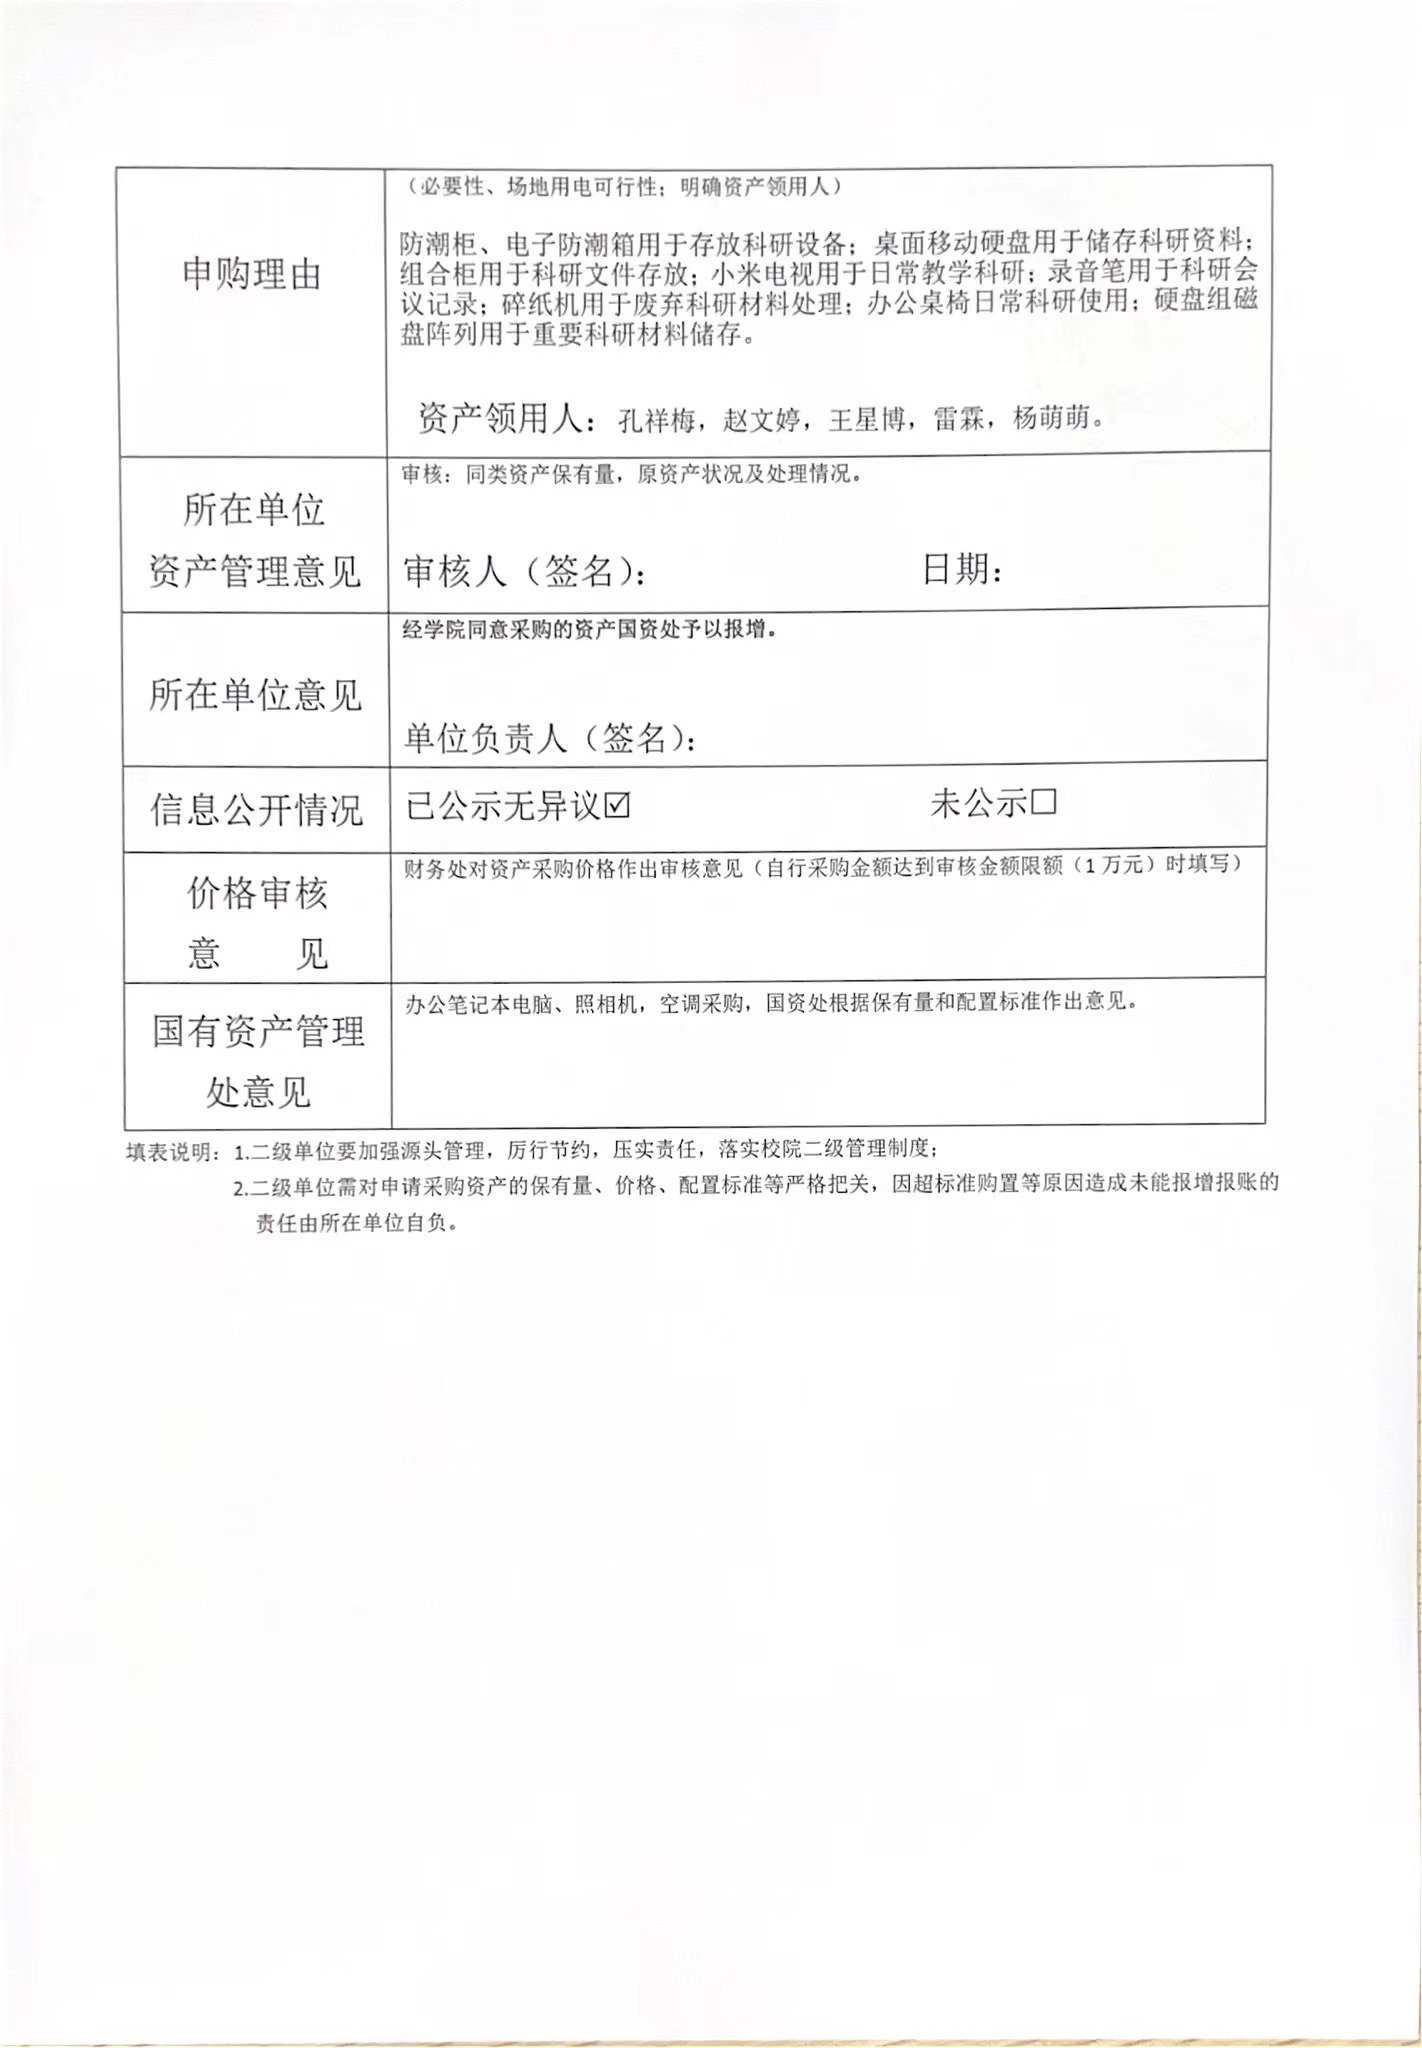 海南师范大学货物（服务）购置申请表